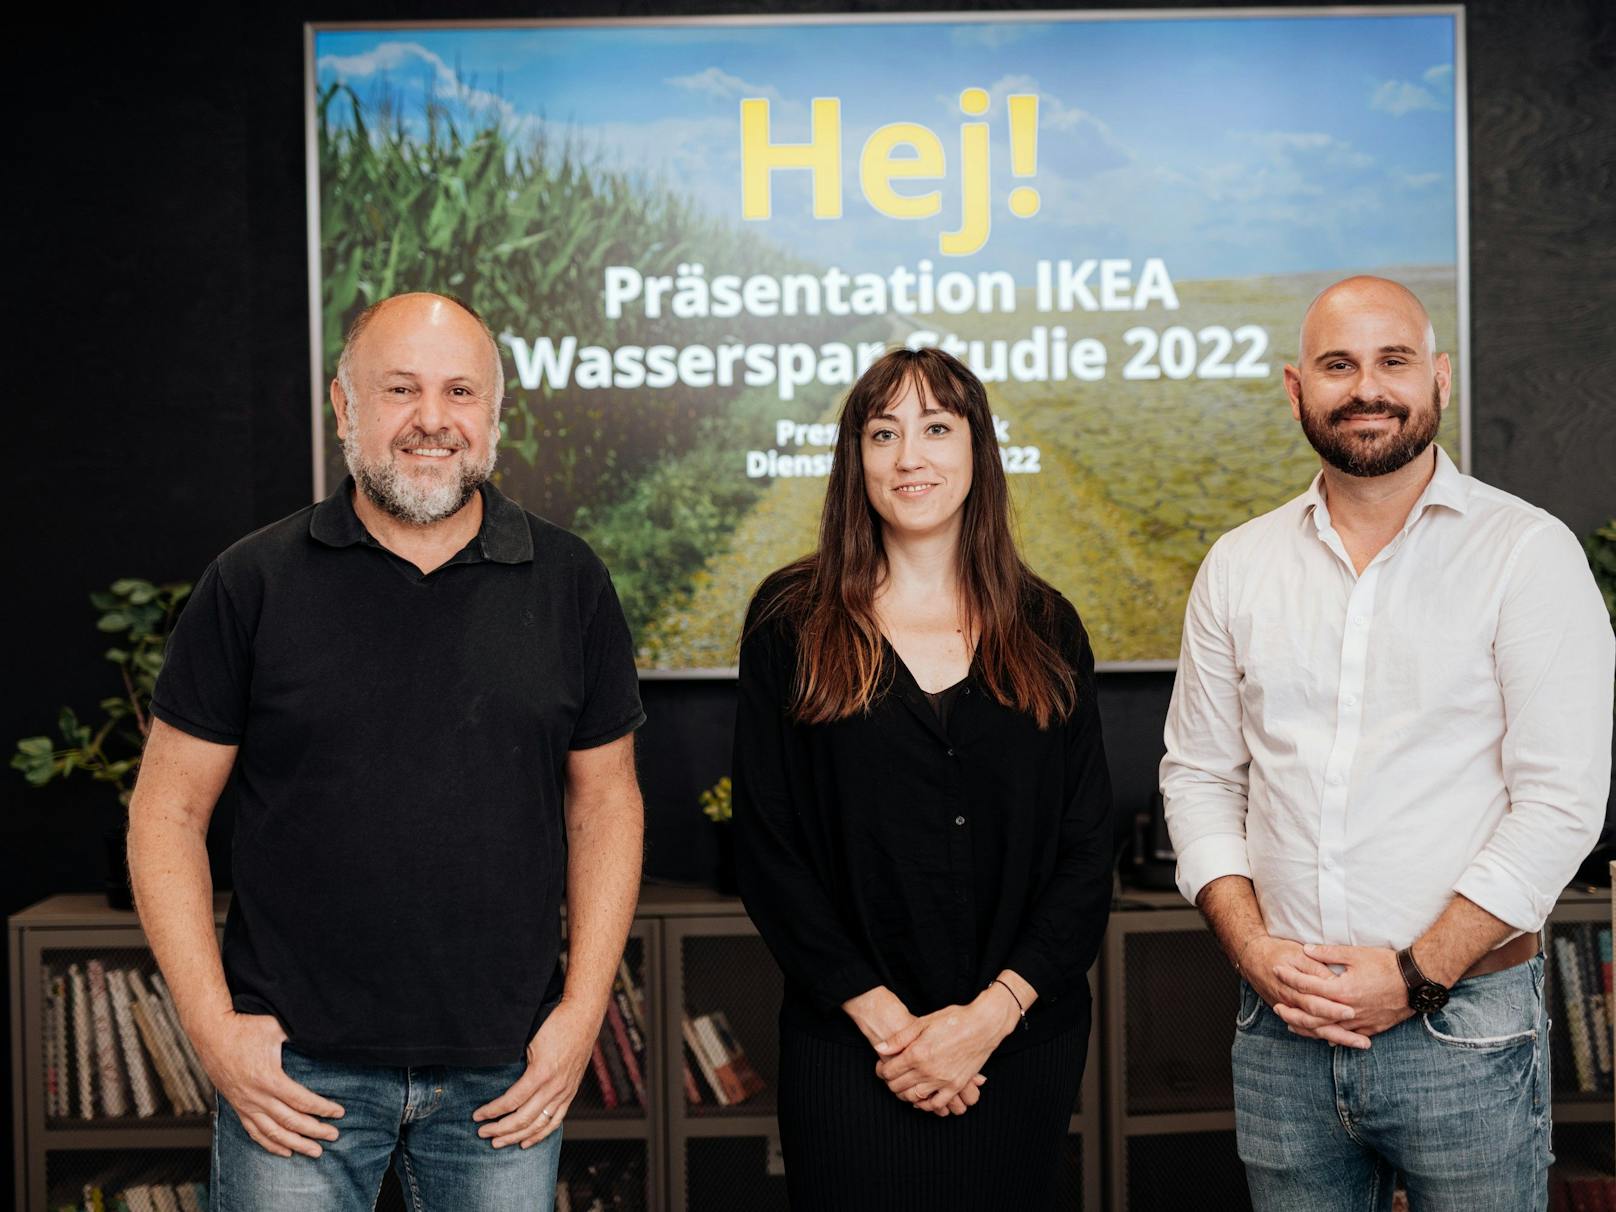 v.l.n.r.: Florian Thalheimer (Country Sustainability Manager IKEA), Lena Wittmann (Studienleiterin, Marketagent) und Uwe Blümel (PR Leader IKEA)